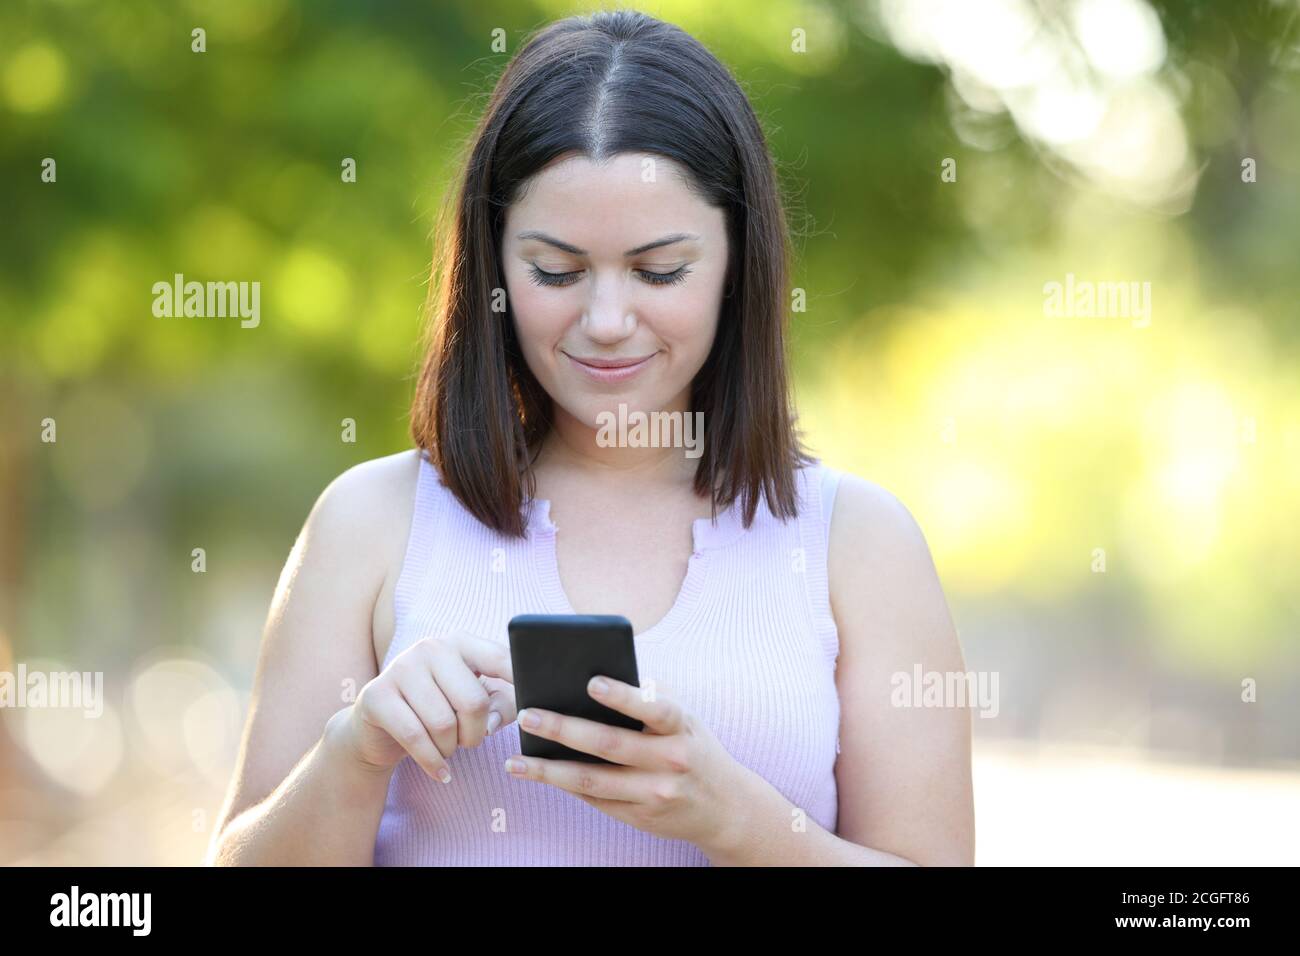 Vista frontale ritratto di una donna seria che utilizza uno smartphone passeggiate in un parco Foto Stock